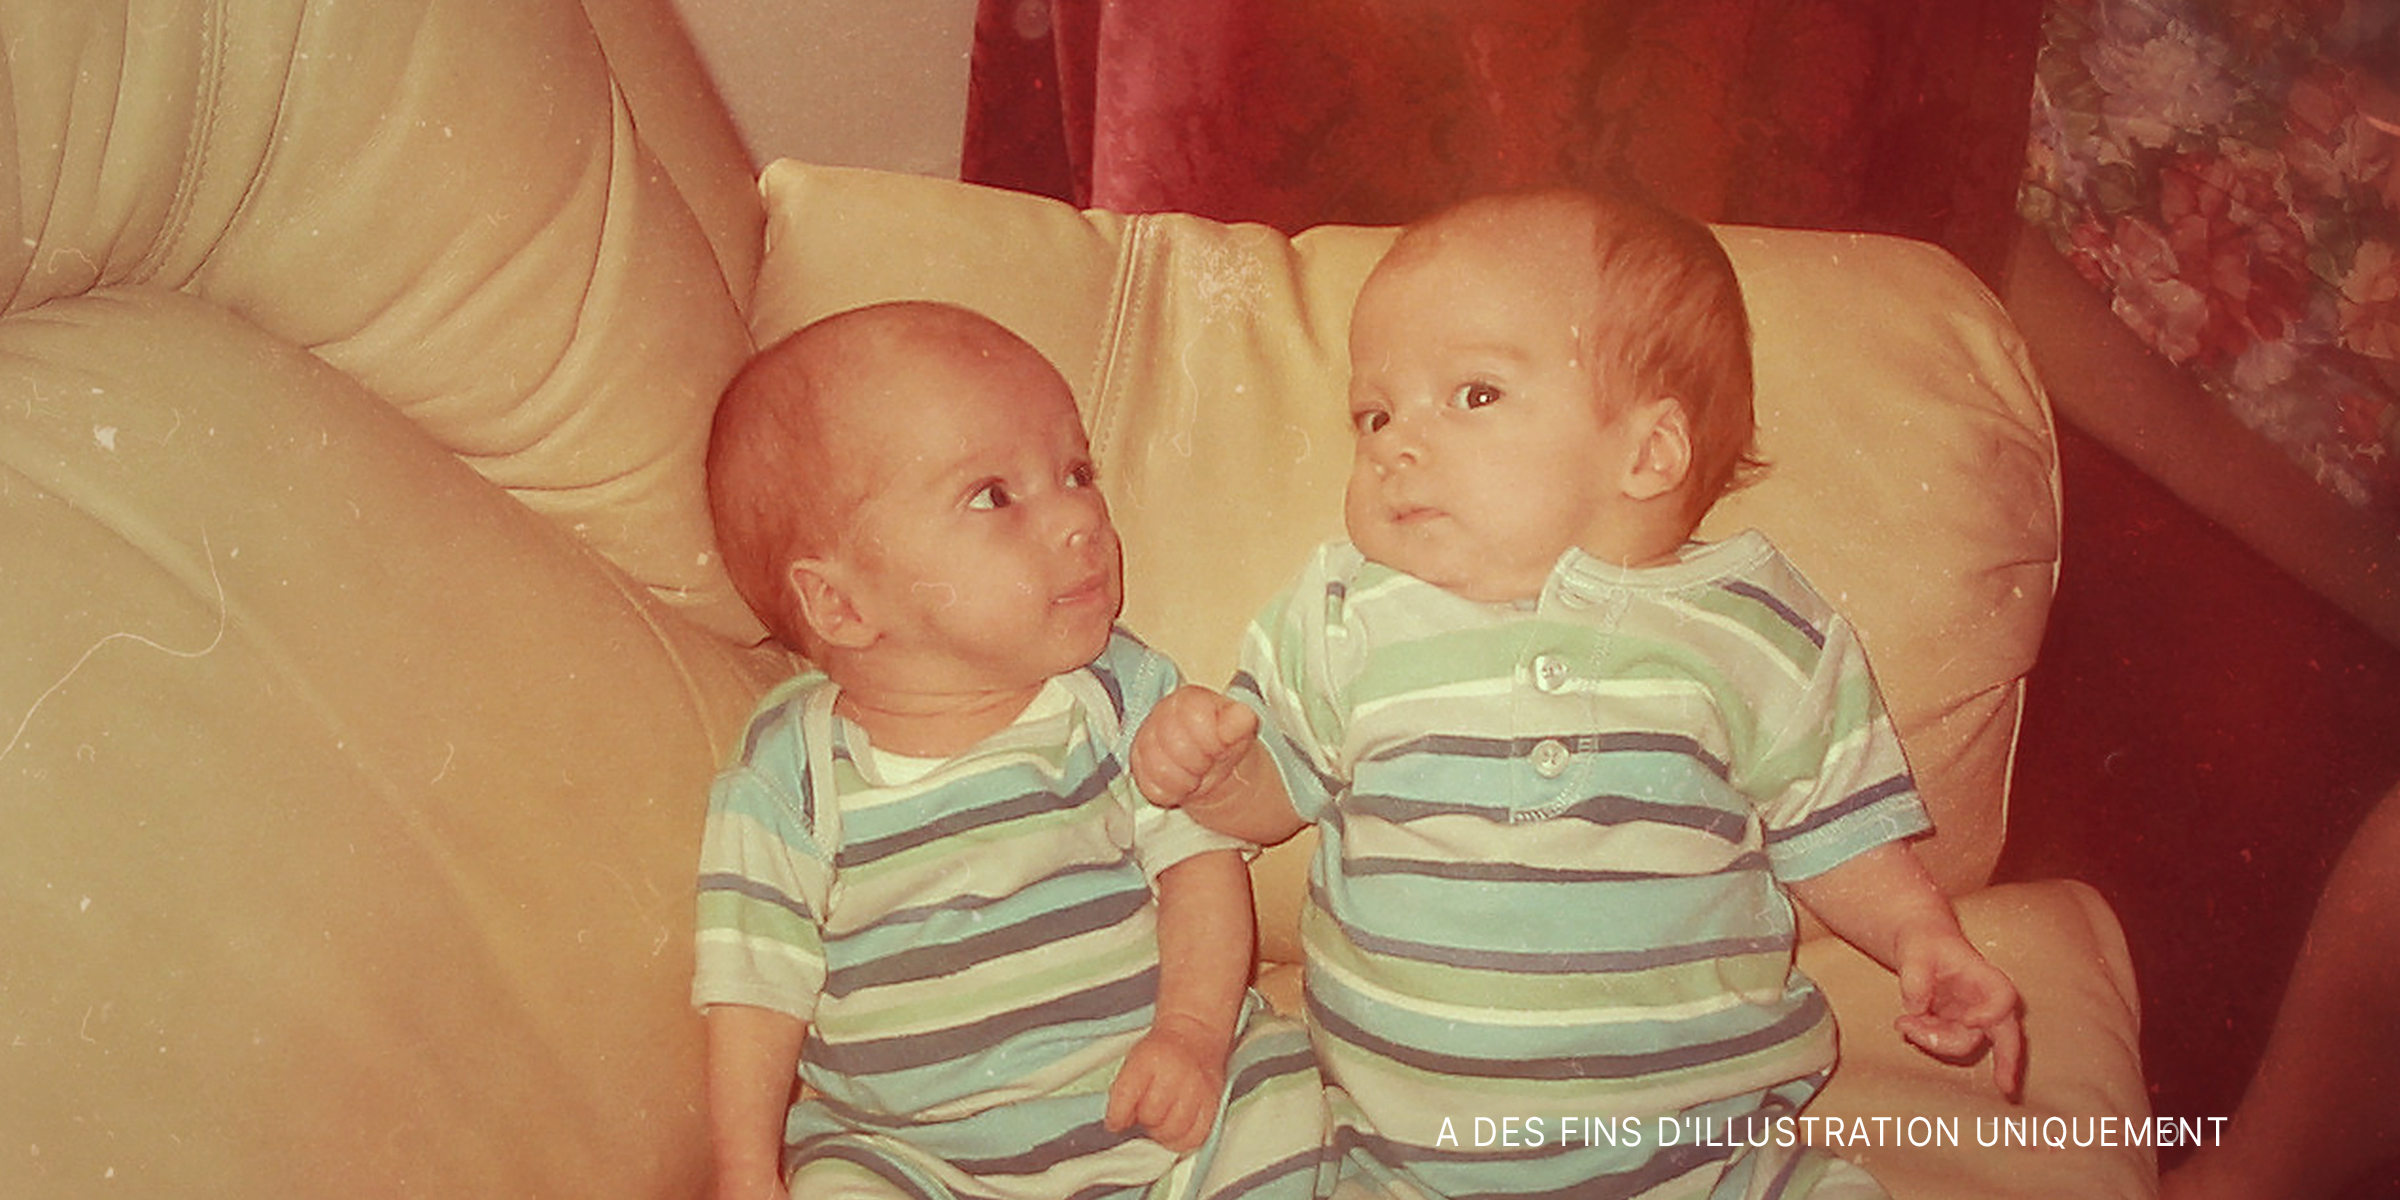 Deux bébés jumeaux sur un canapé | Source : Flickr/goldberg (CC BY 2.0)